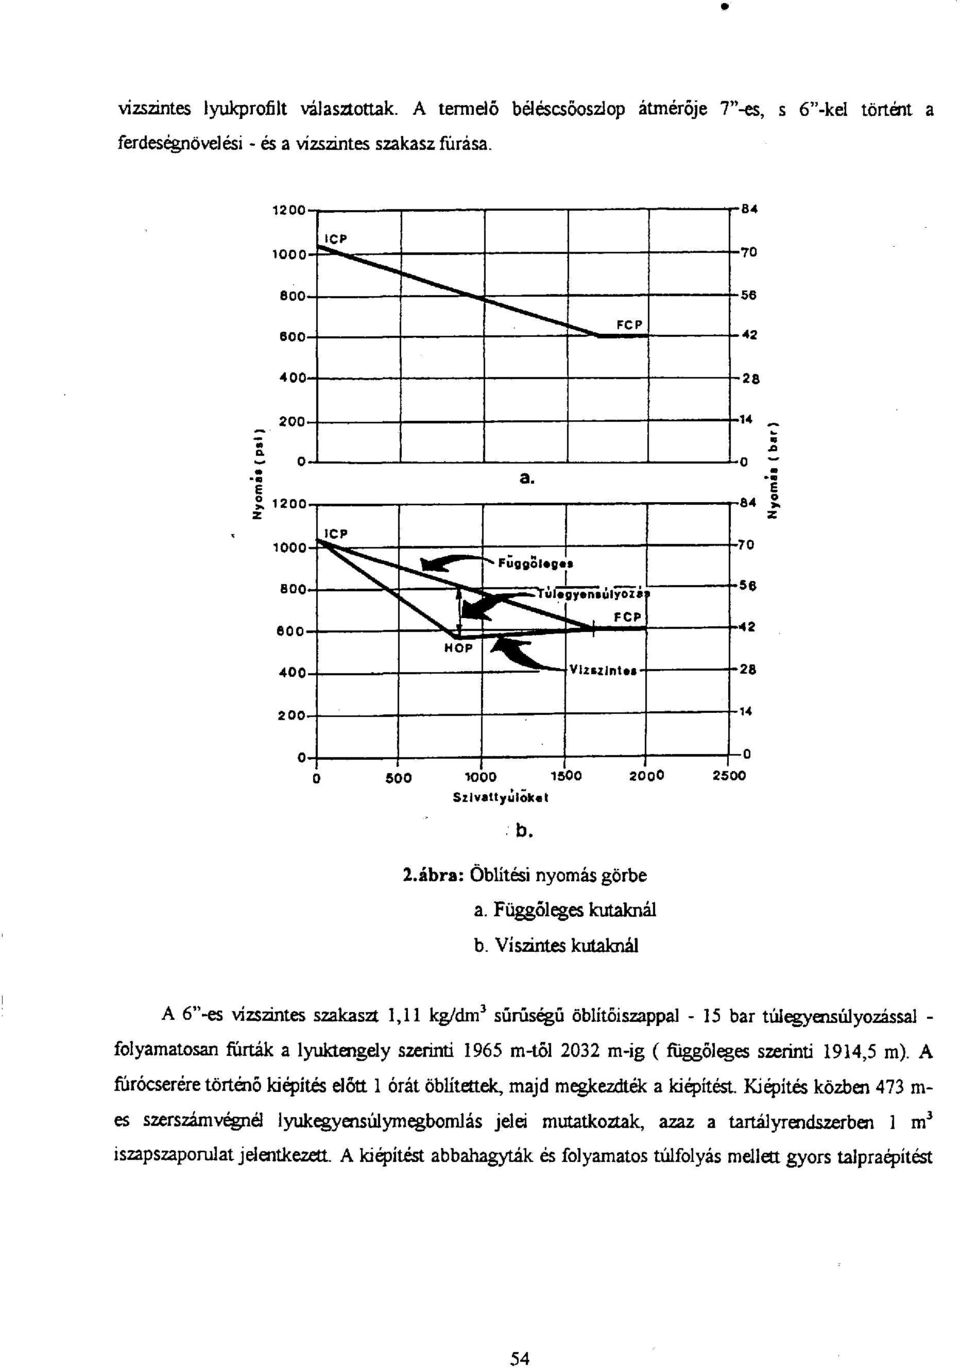 Víszintes kutaknál A 6"-es vízszintes szakaszt 1,11 kg/dm 3 sűrűségű öblítőiszappal - 15 bar túlegyensúlyozással - folyamatosan fúrták a lyuktengely szerinti 1965 m-től 2032 m-ig (függőleges szerinti